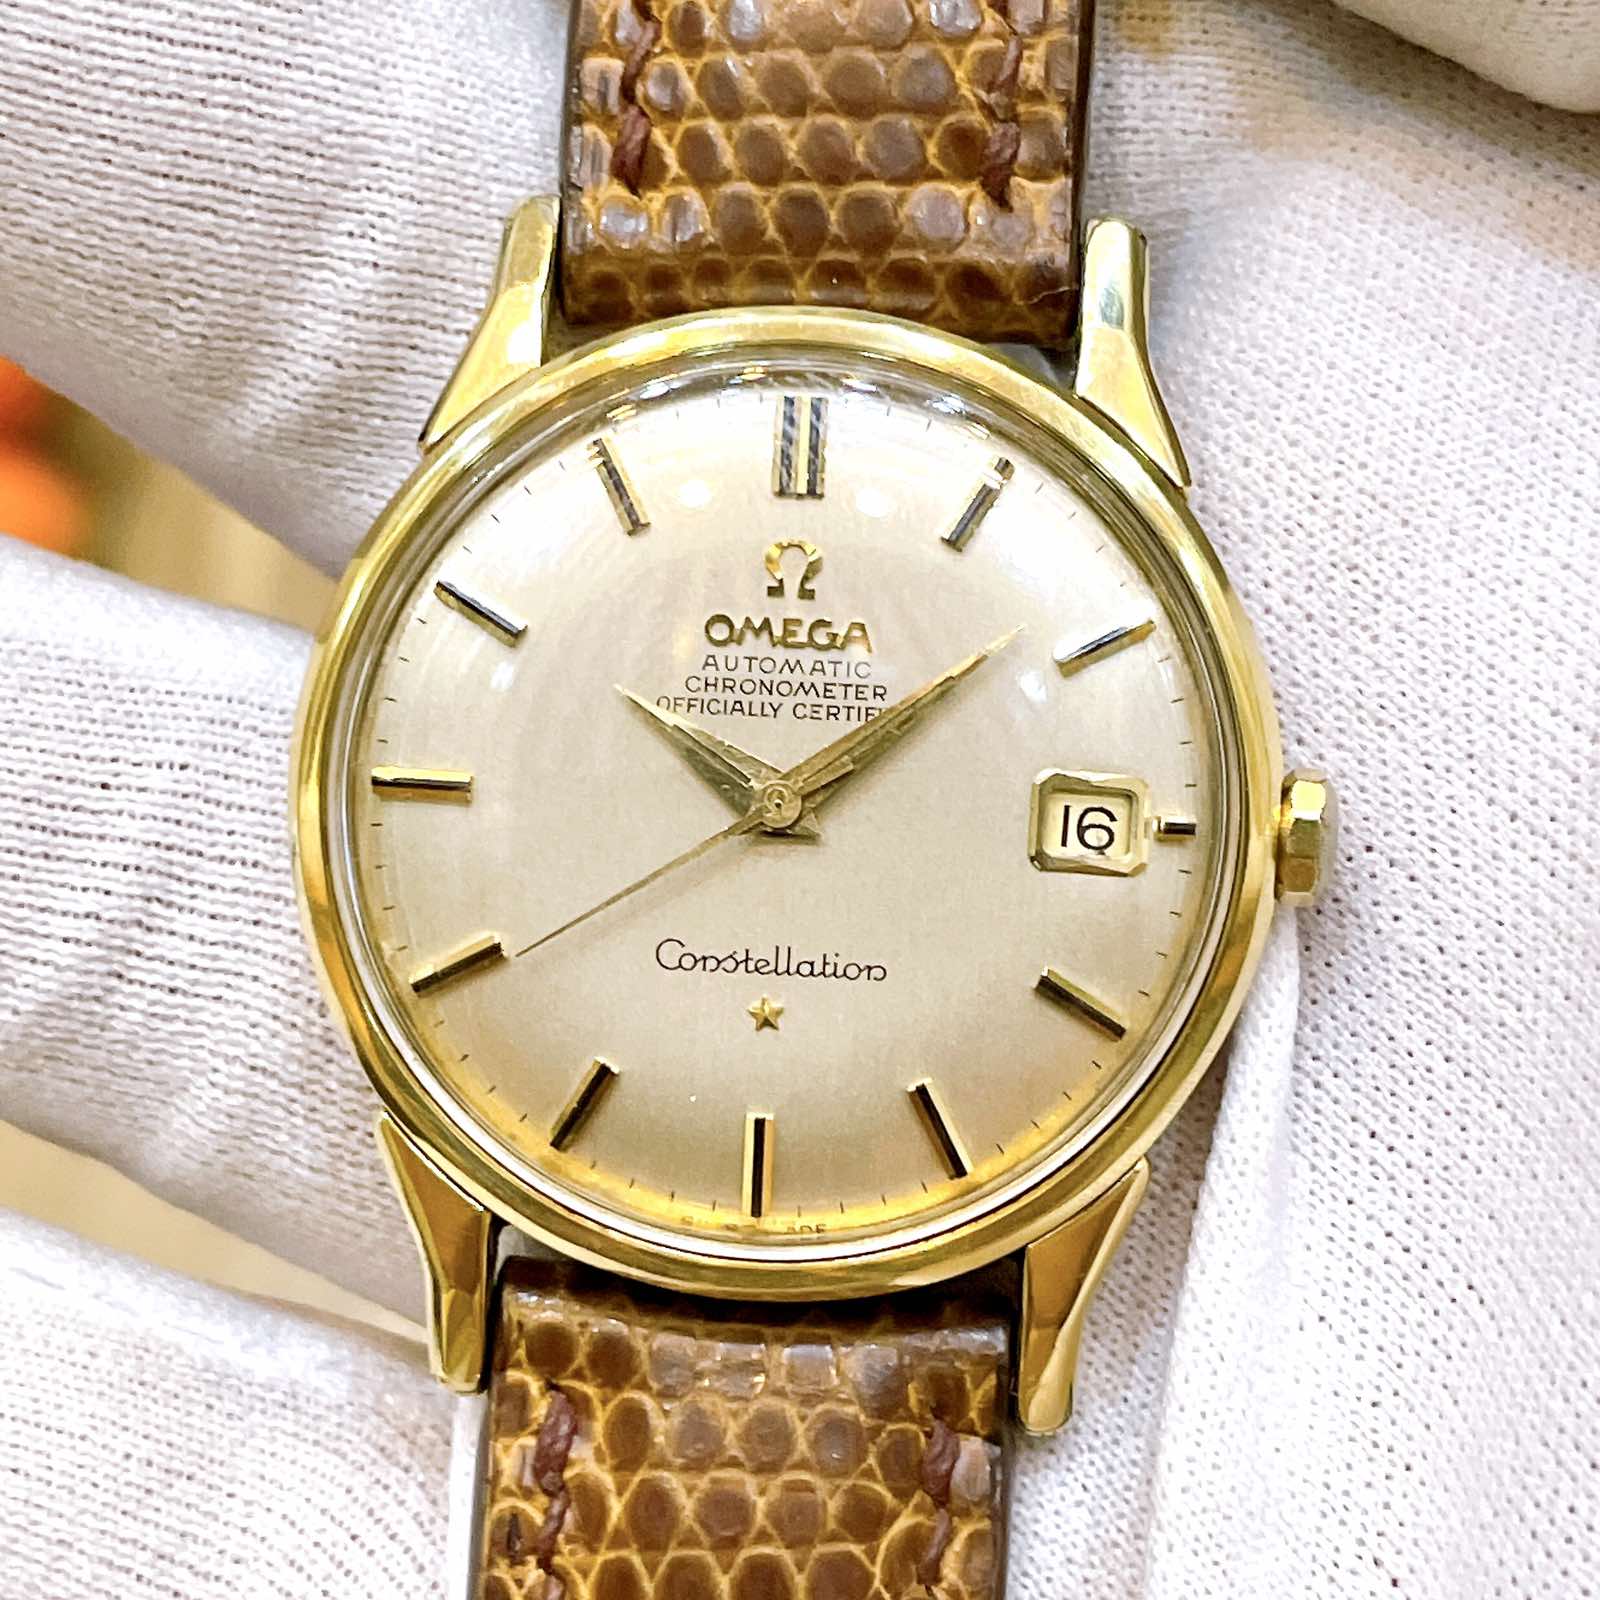 Đồng hồ cổ Omega Constellation Automatic dmi chính hãng Thụy Sĩ với Mặt số Zin 3 kim 1 lịch kết hợp với cọc số nổi rất đẹp.